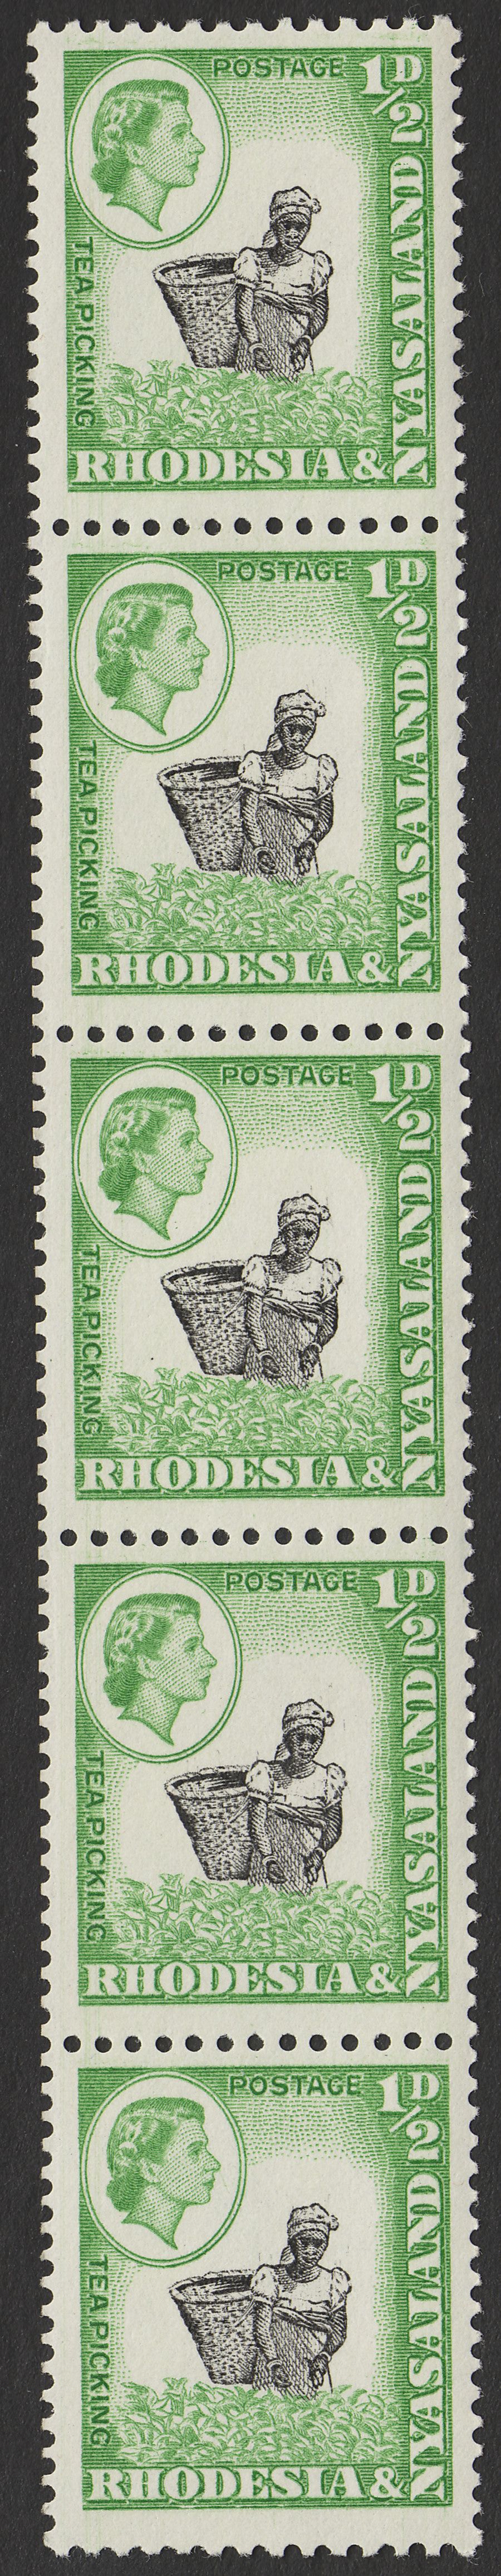 Rhodesia & Nyasaland 1959 QEII ½d Coil Perf Strip of 5 Mint SG18a